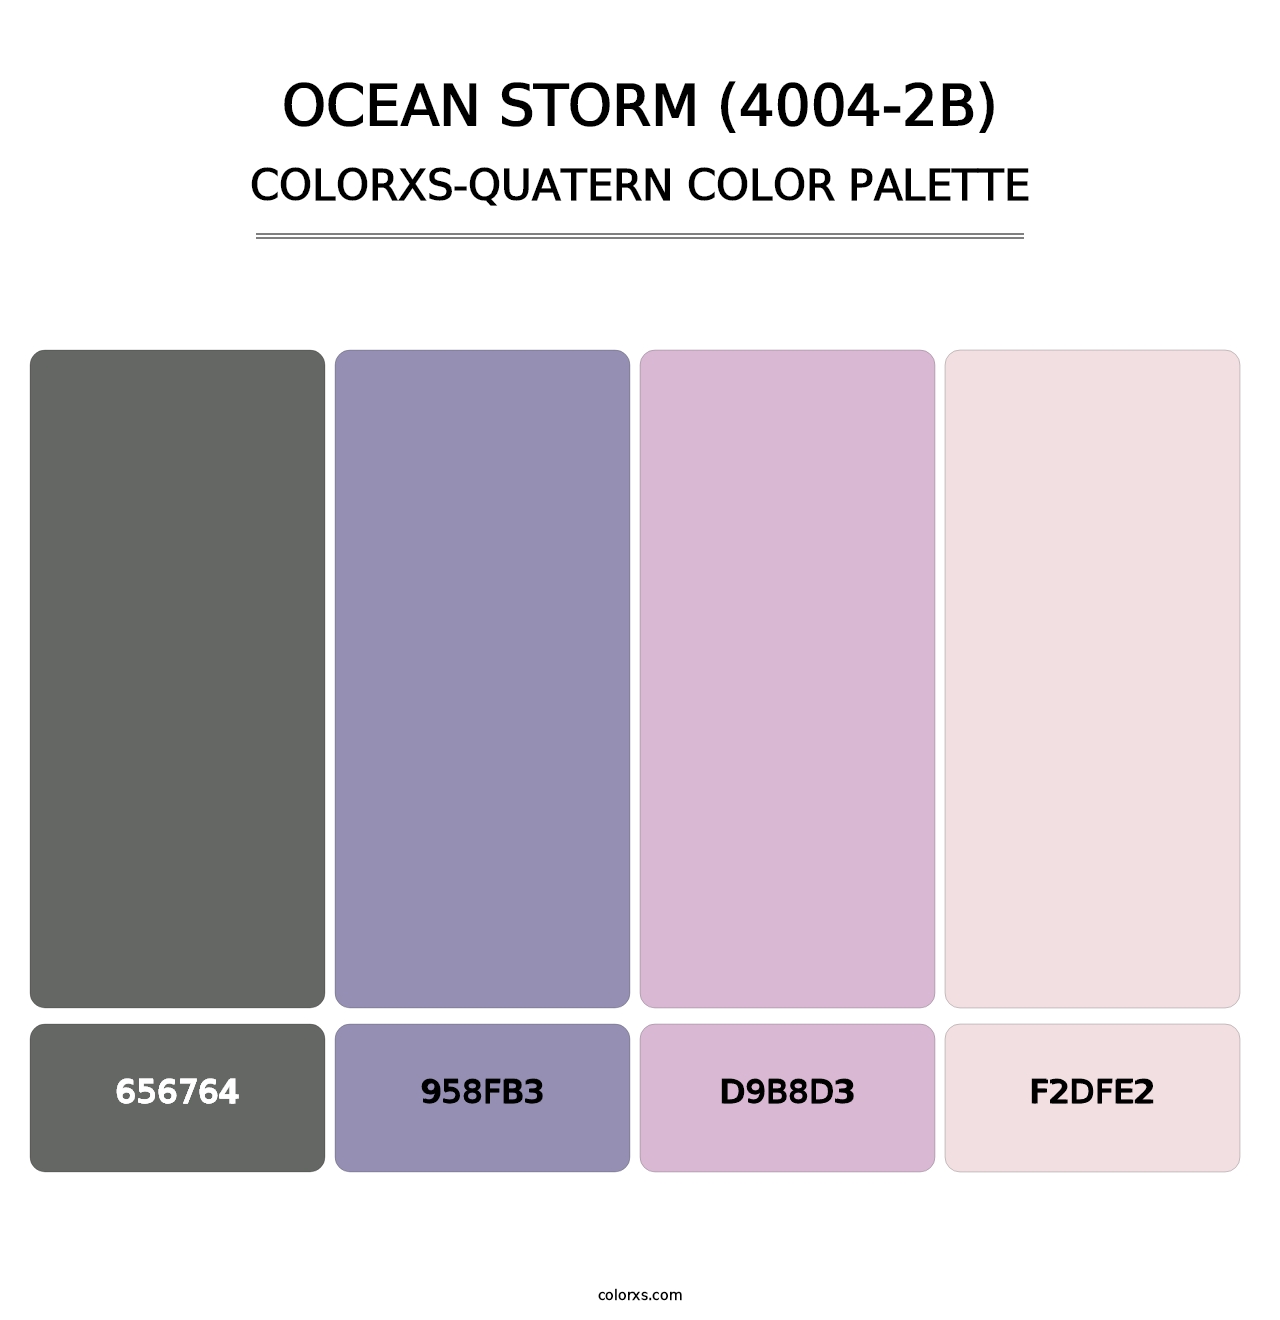 Ocean Storm (4004-2B) - Colorxs Quatern Palette